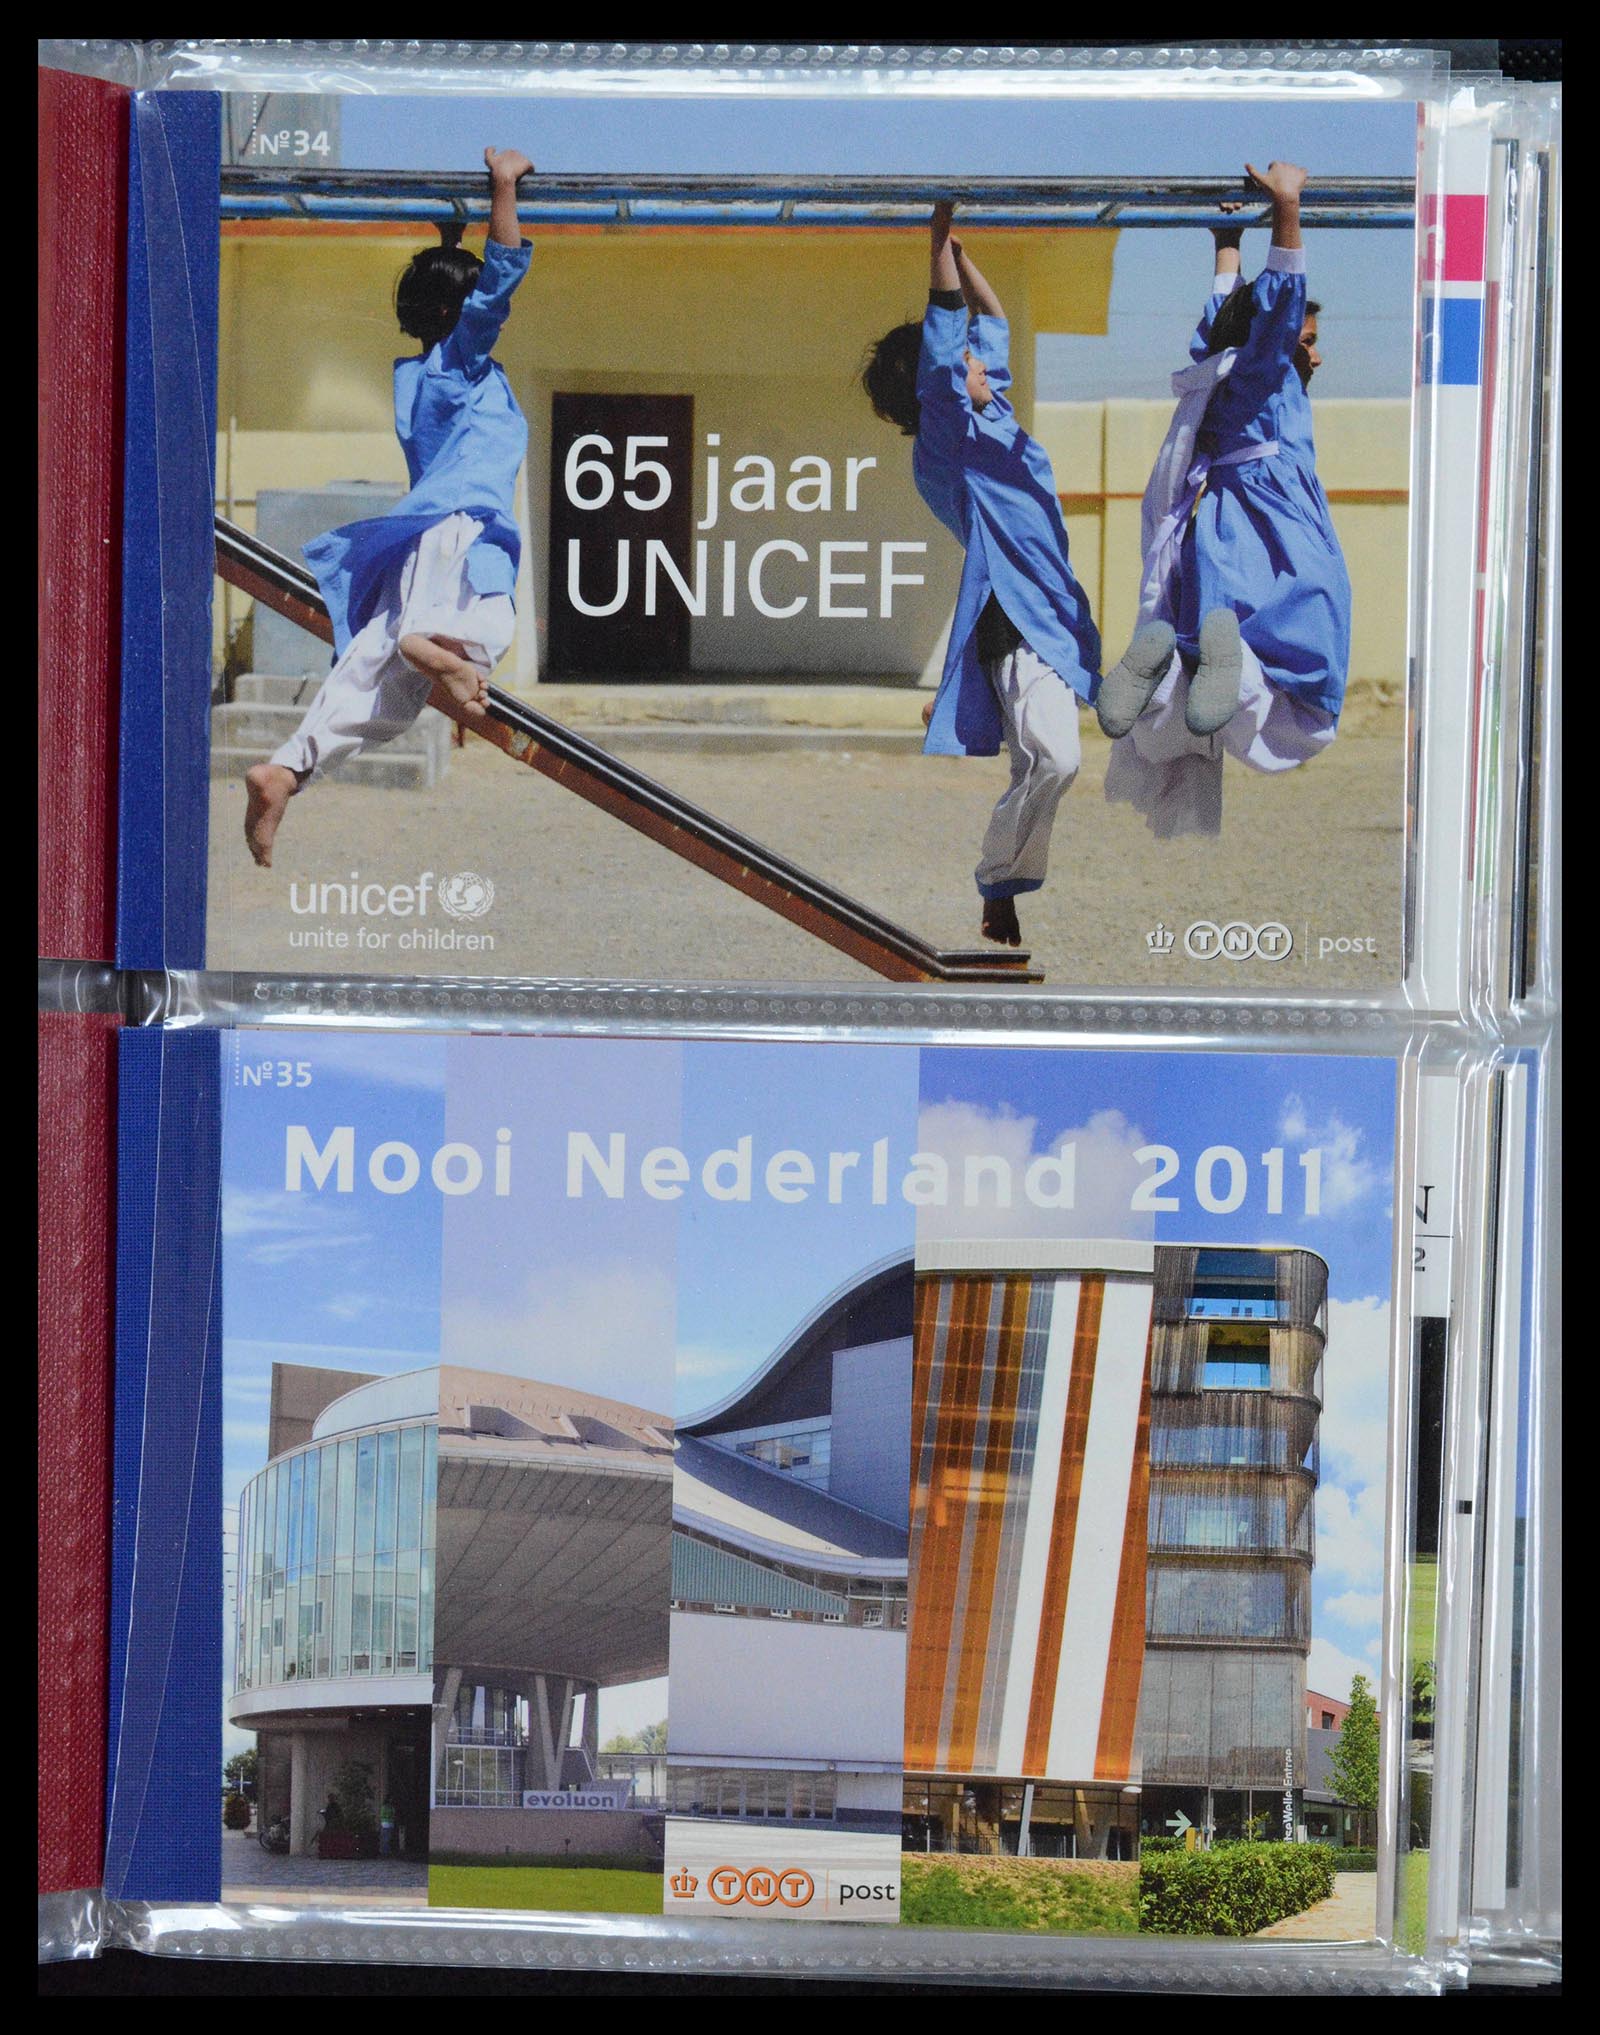 39018 0018 - Stamp collection 39018 Netherlands prestige booklets 2003-2016.